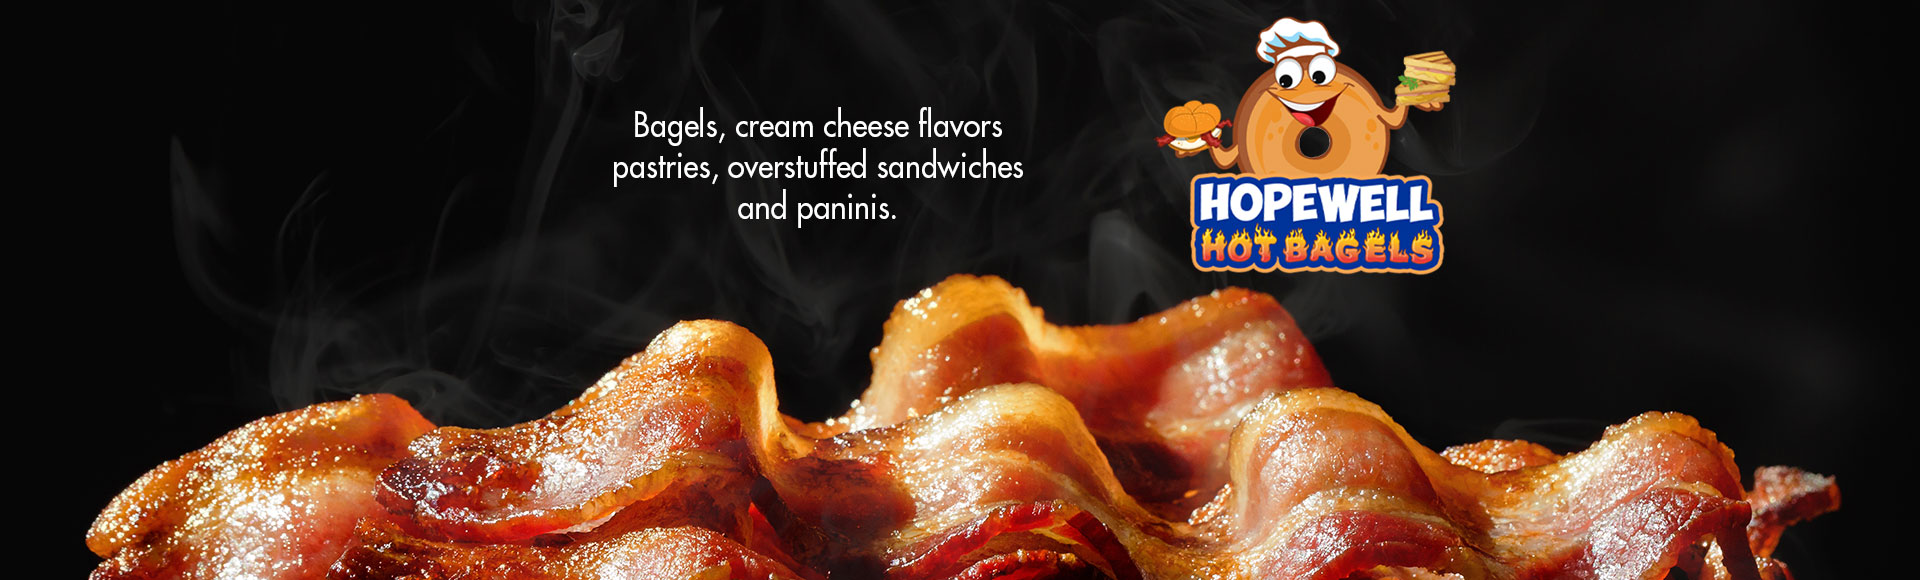 Hopewell Hot Bagels